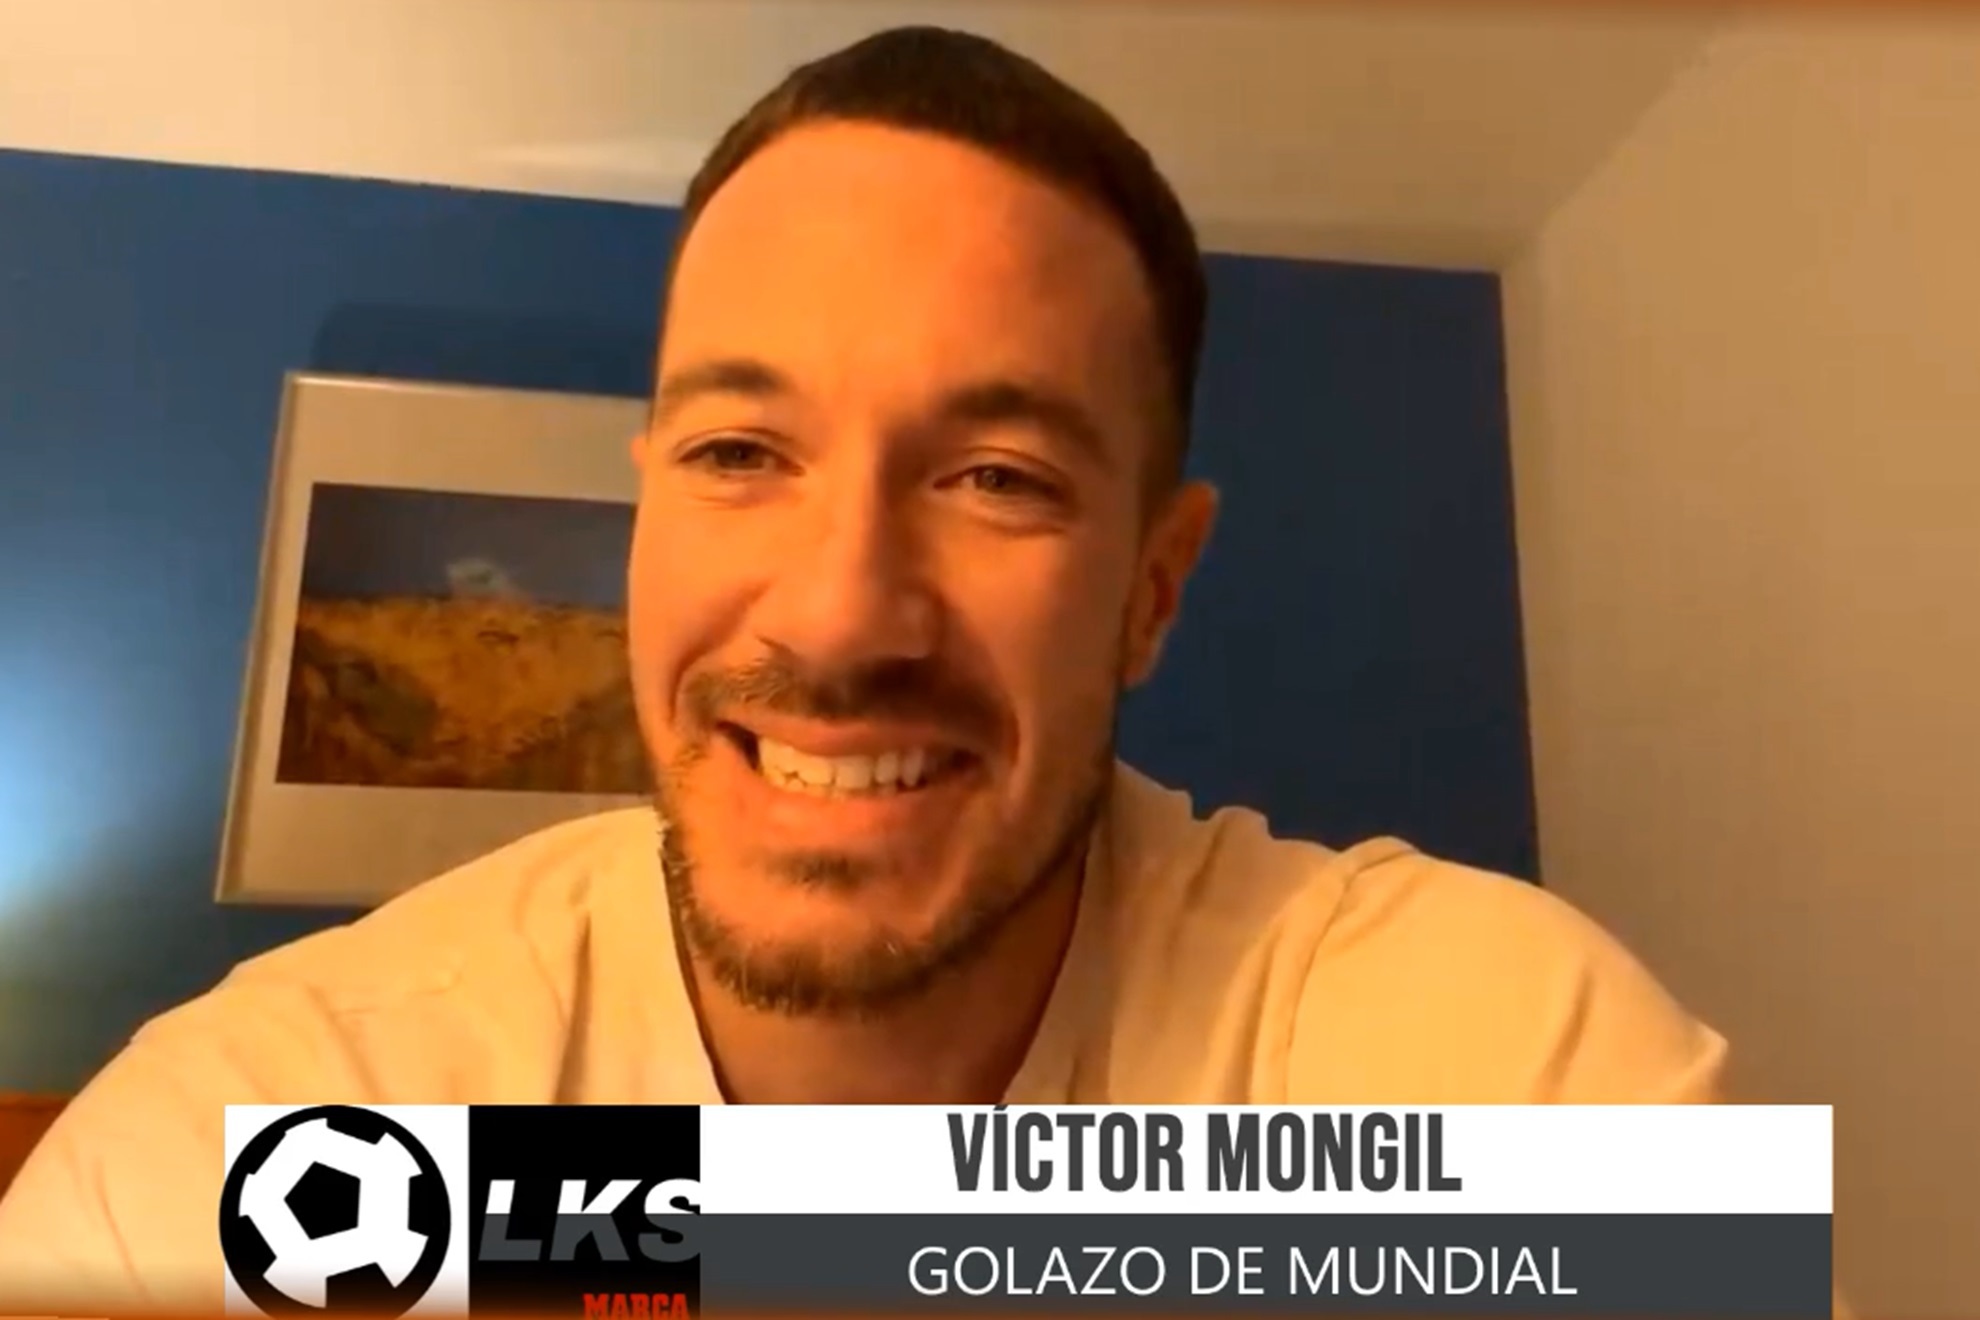 Vctor Mongil en el LKS tras un golazo que vale un Mundial: Esto es el ADN Aniquiladores